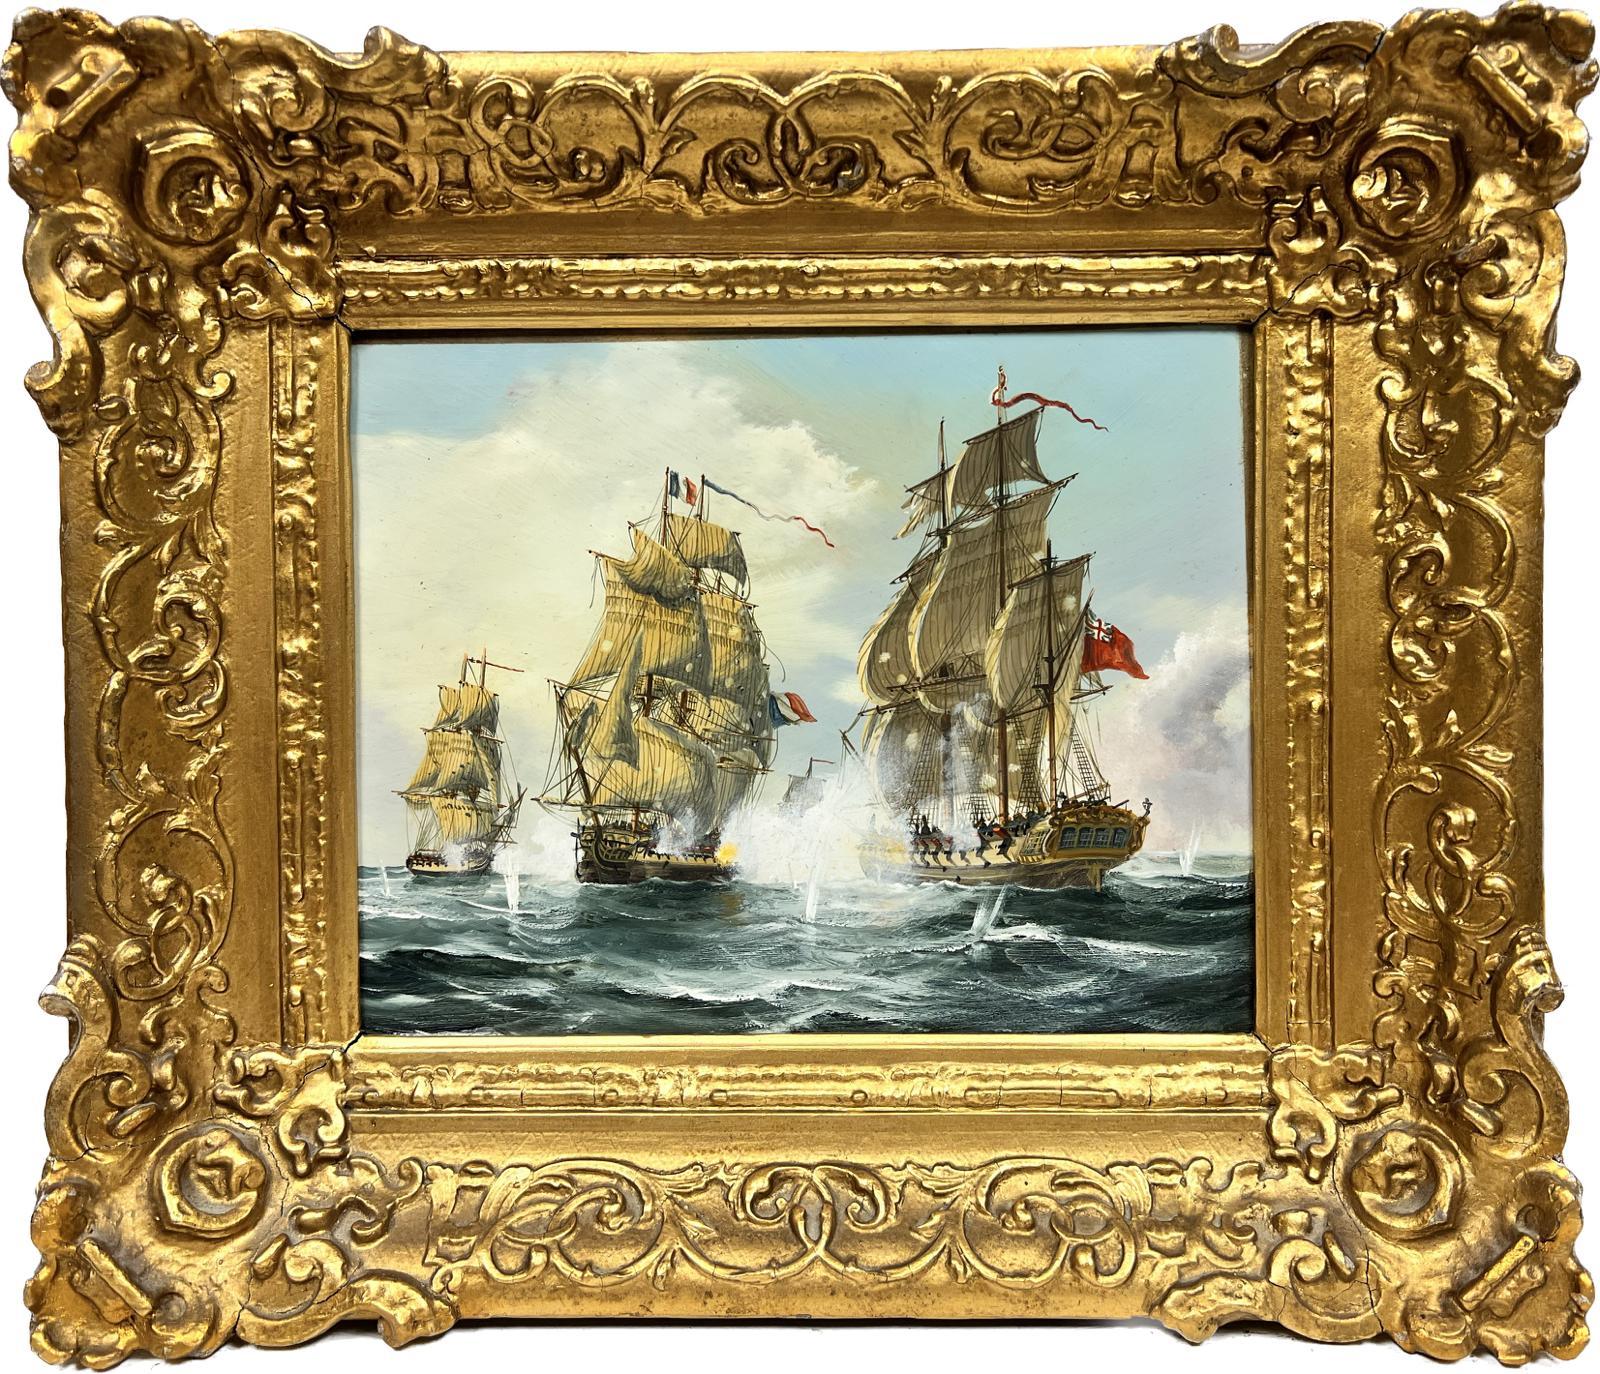 Contemporary English School Landscape Painting – Englische Schule, Ölgemälde, Napoleonische Kriege, Marine-Verlobungsschlacht auf See